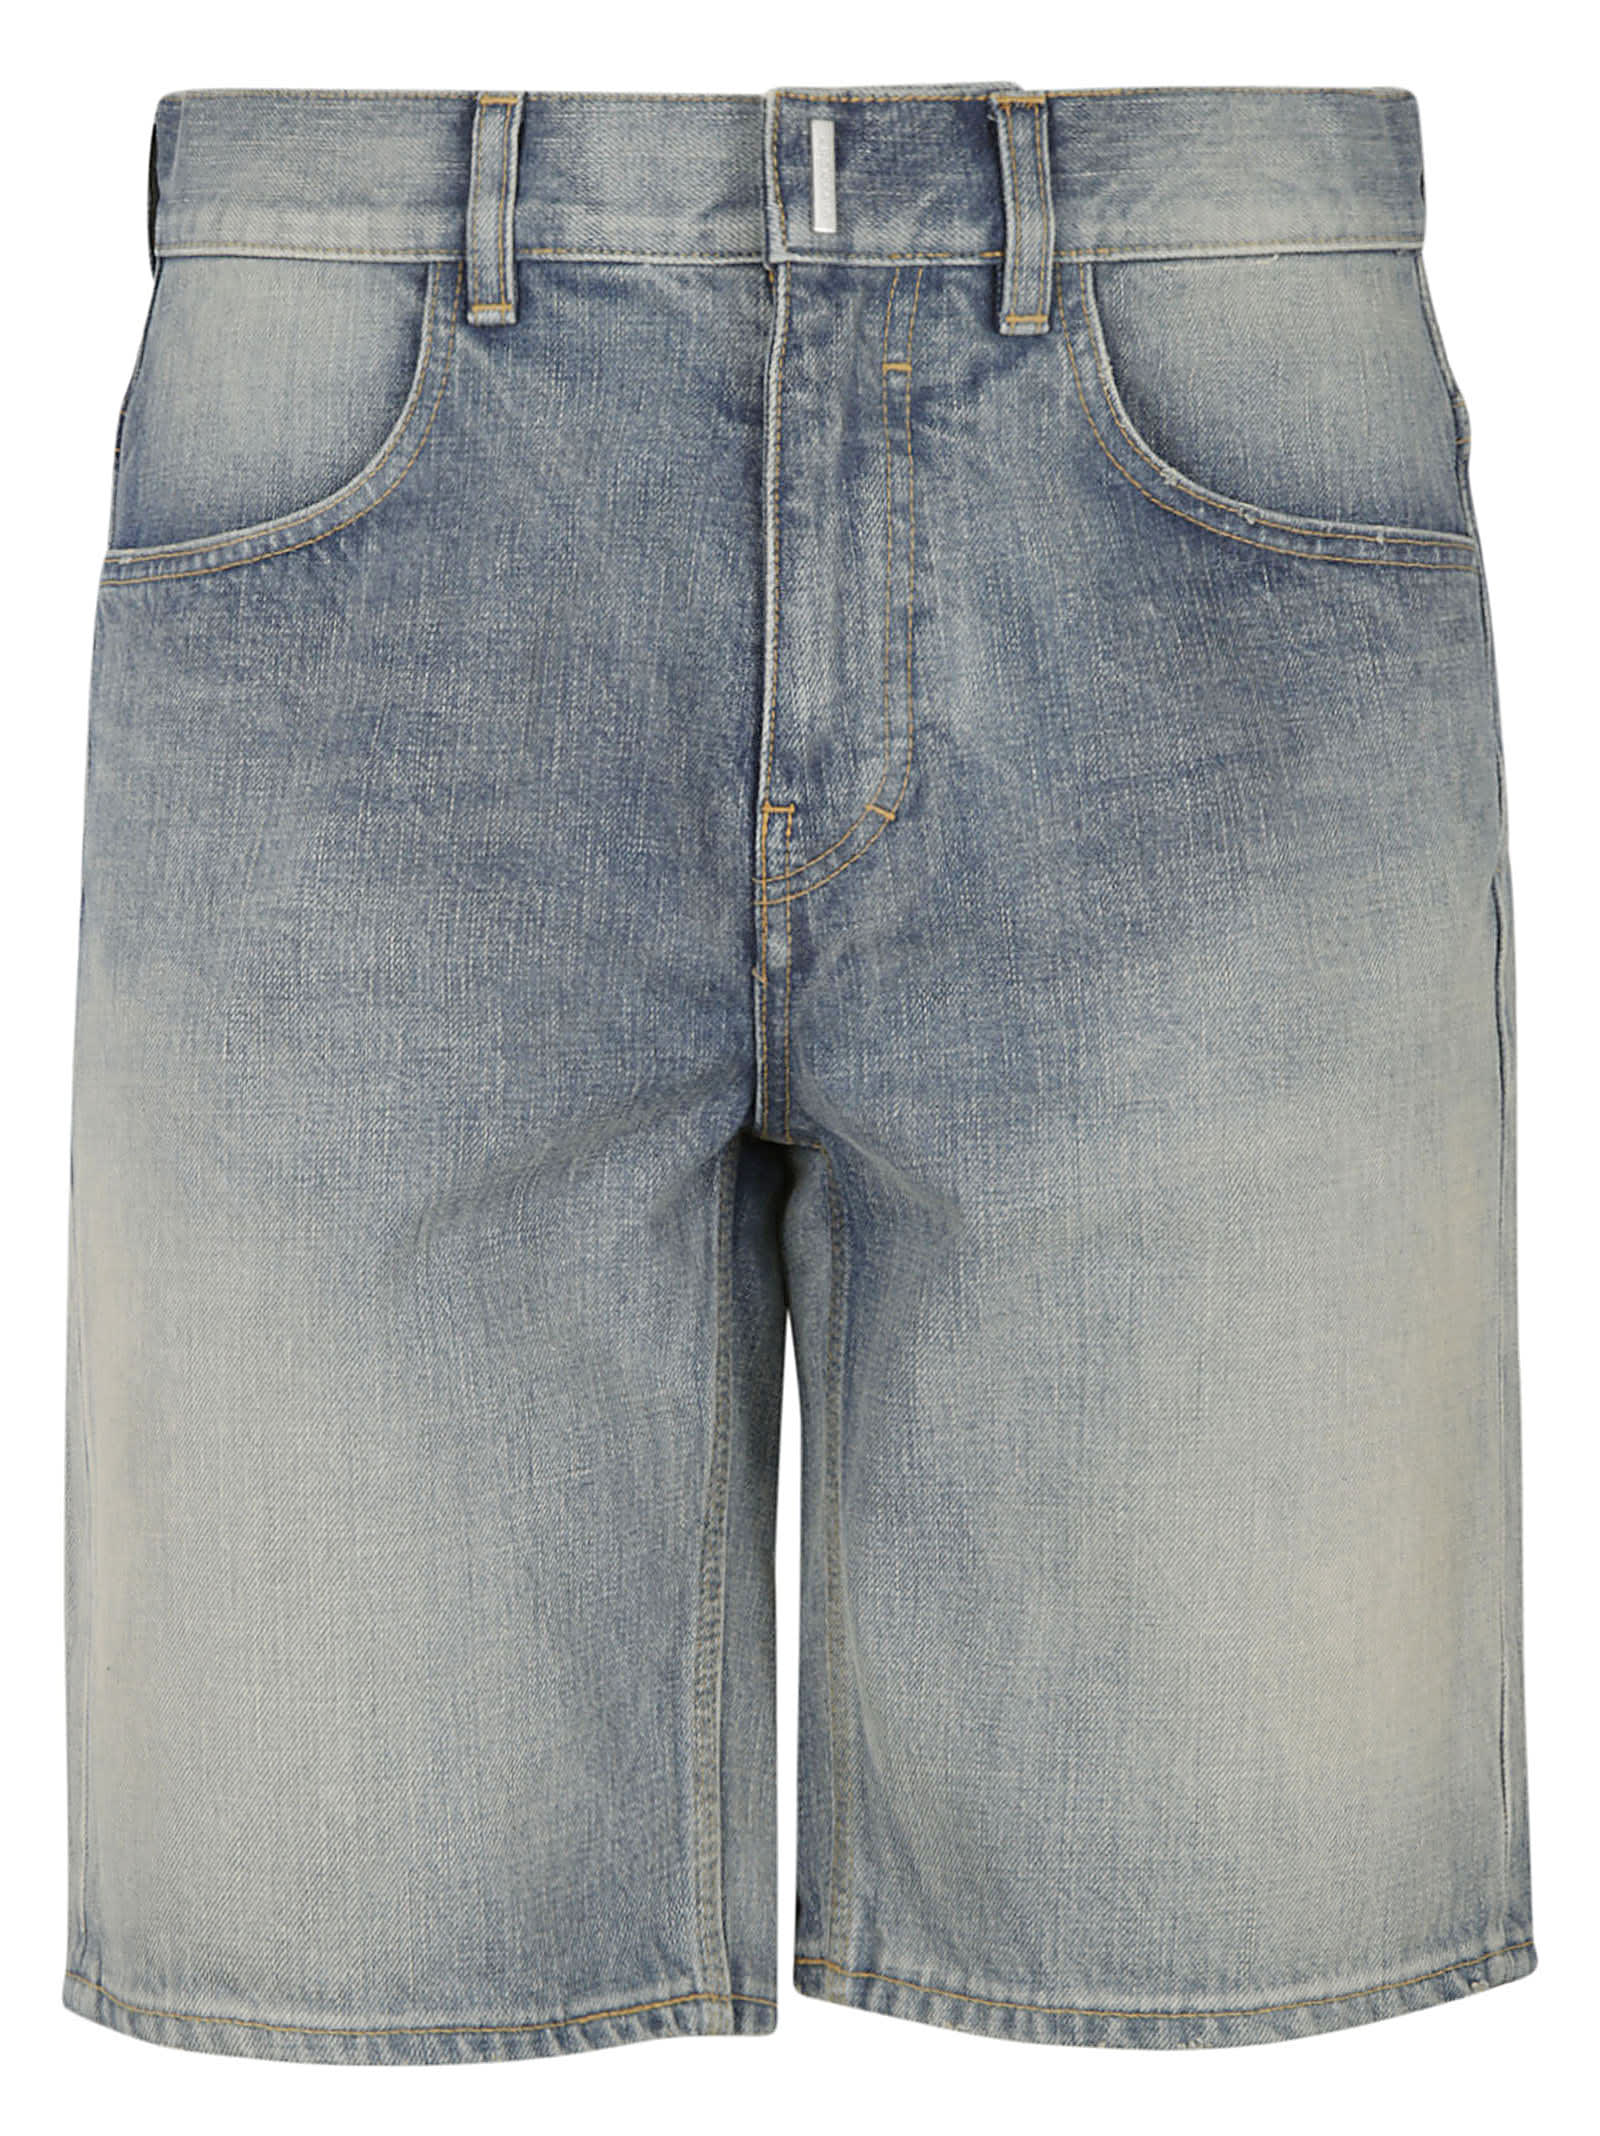 Givenchy Vintage Effect Denim Shorts